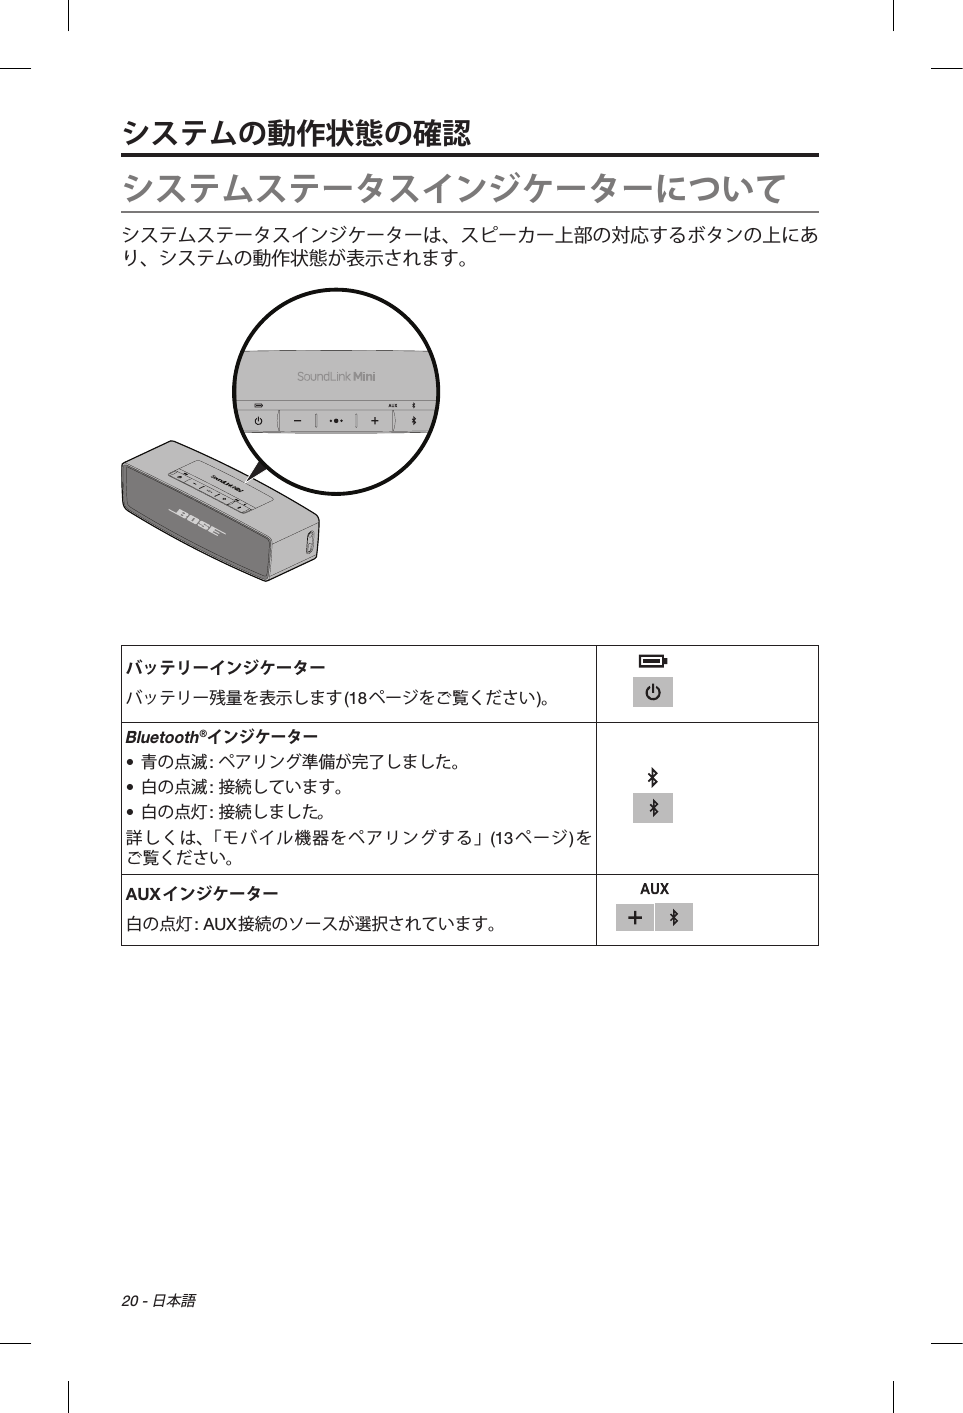 20 - 日本語システムの動作状態の確認システムステータスインジケーターについてシステムステータスインジケーターは、スピーカー上部の対応するボタンの上にあり、システムの動作状態が表示されます。バッテリーインジケーターバッテリー残量を表示します(18ページをご覧ください)。Bluetooth®インジケーター• 青の点滅: ペアリング準備が完了しました。• 白の点滅: 接続しています。• 白の点灯: 接続しました。詳しくは、「モバイル機器をペアリングする」(13ページ)をご覧ください。AUXインジケーター白の点灯: AUX接続のソースが選択されています。